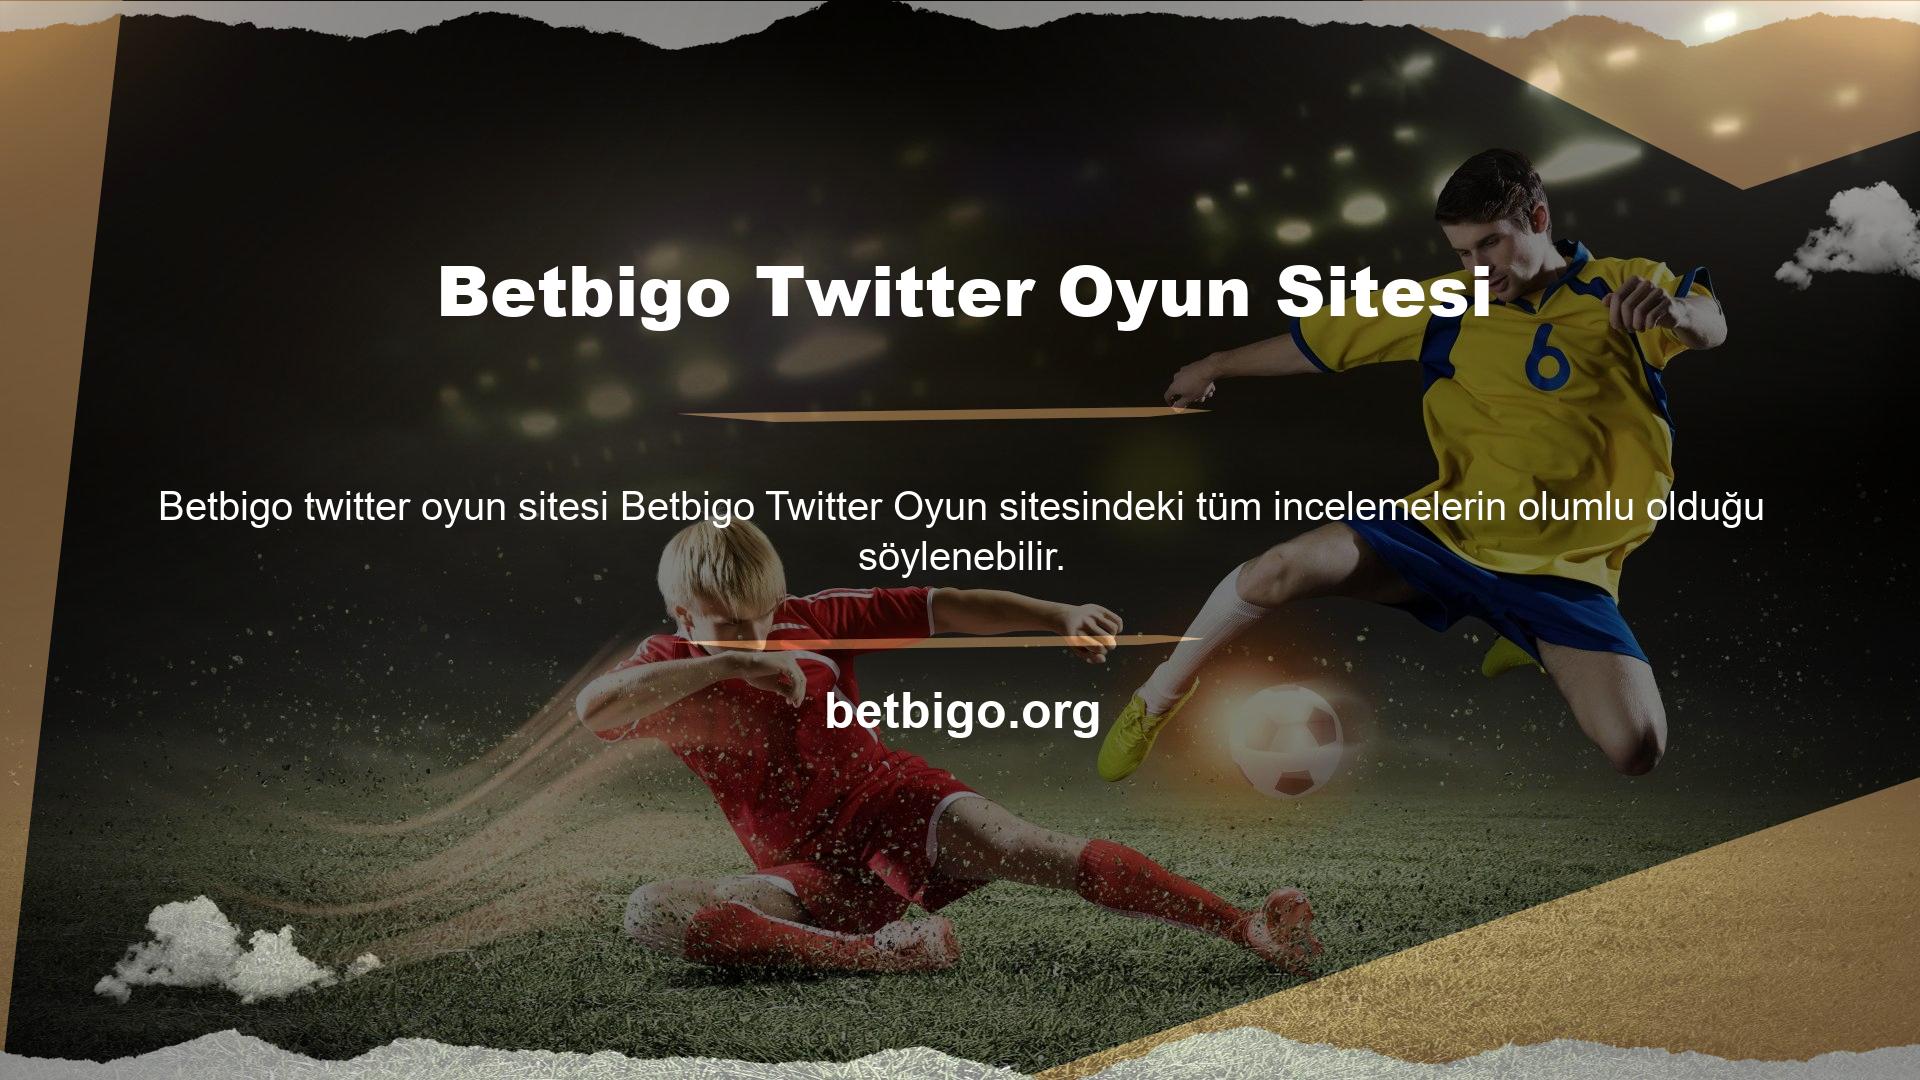 Yanlışlıkla bir web sitesi kesintisi durumunda Betbigo Twitter yetkisinin değeri hemen devreye girer